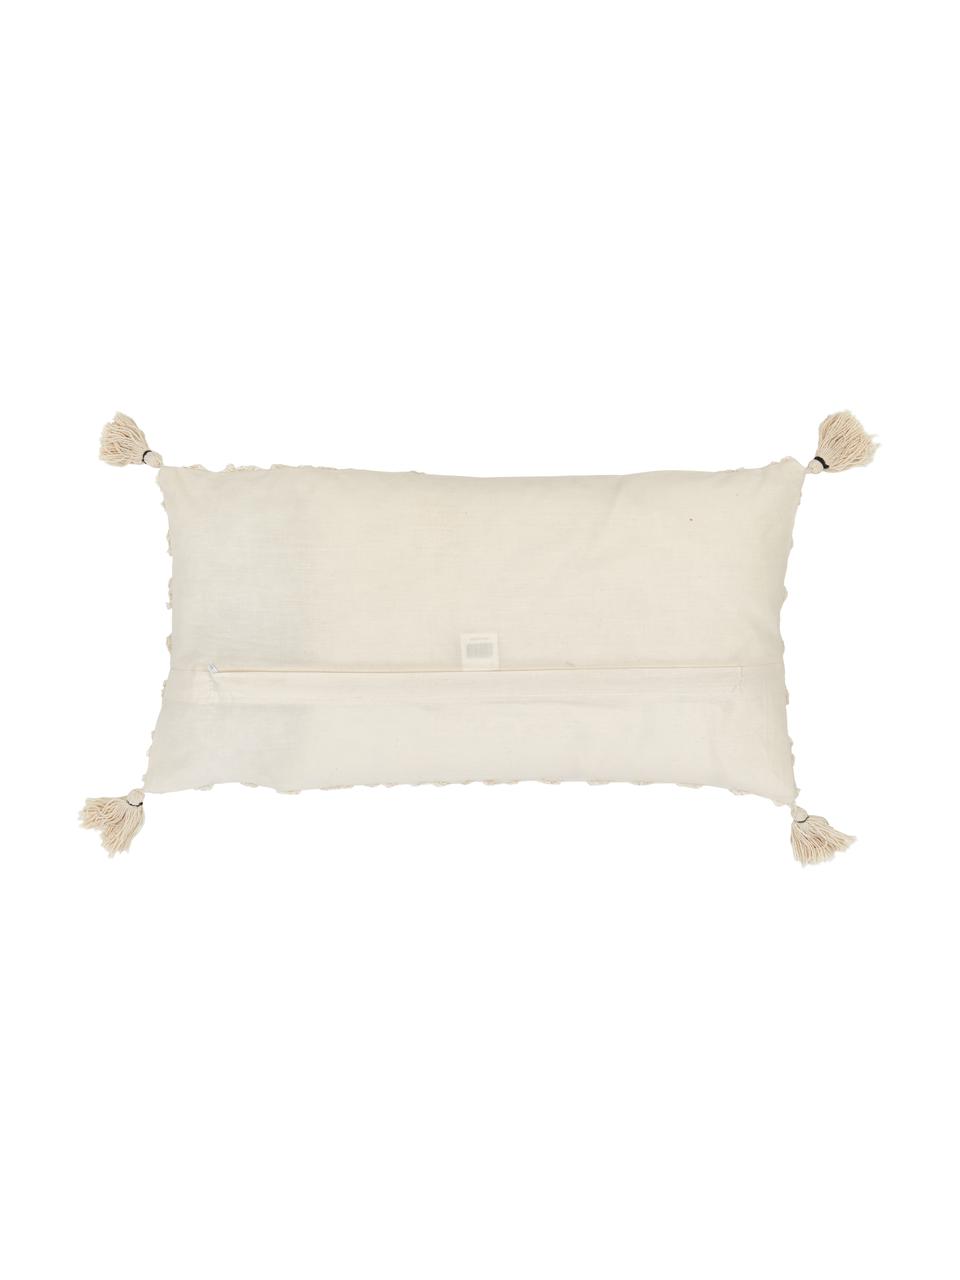 Kissenhülle Royal mit Hoch-Tief-Muster, 100% Baumwolle, Gebrochenes Weiss, B 30 x L 60 cm